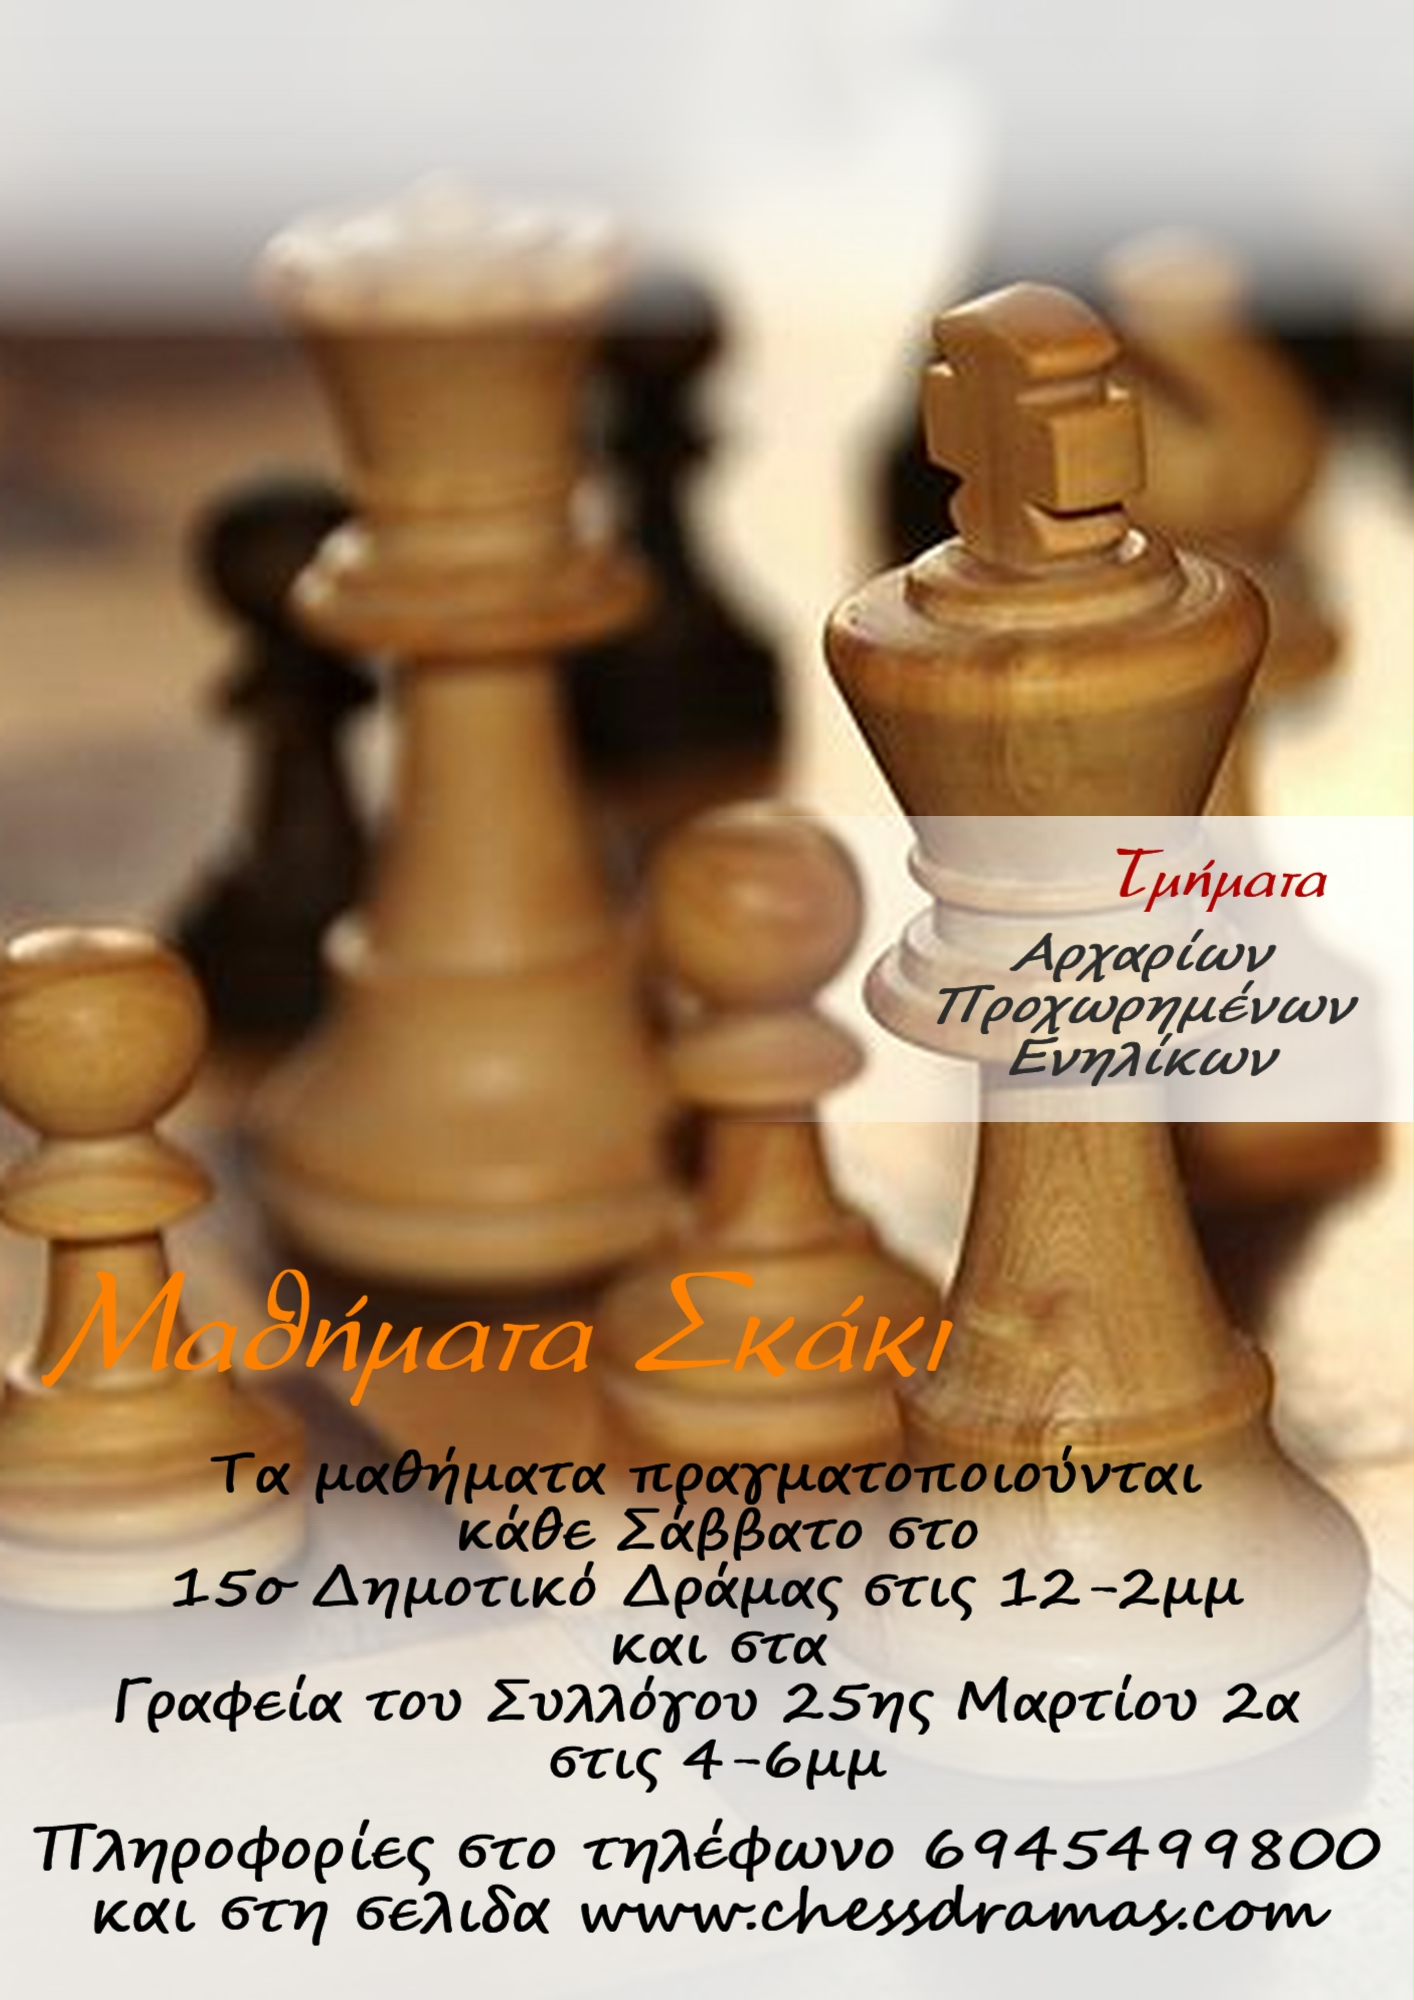 Από την 17η Σεπτεμβρίου 2022 αρχίζει η νέα εκπαιδευτική περίοδος 2022-2023 του Σκακιστικού Ομίλου Δράμας. Τα μαθήματα σκάκι στα τμήματα αρχαρίων και προχωρημένων γίνονται από ειδικευμένους προπονητές - εκπαιδευτές στο χώρο  του Σκακιστικού Ομίλου Δράμας (Γήπεδο Κραχτιδη) Τηλέφωνα επικοινωνίας 6945499800 Νέες εγγραφές γίνονται κάθε Σάββατο, ώρες 12-1:30 και 4 – 6 μμ